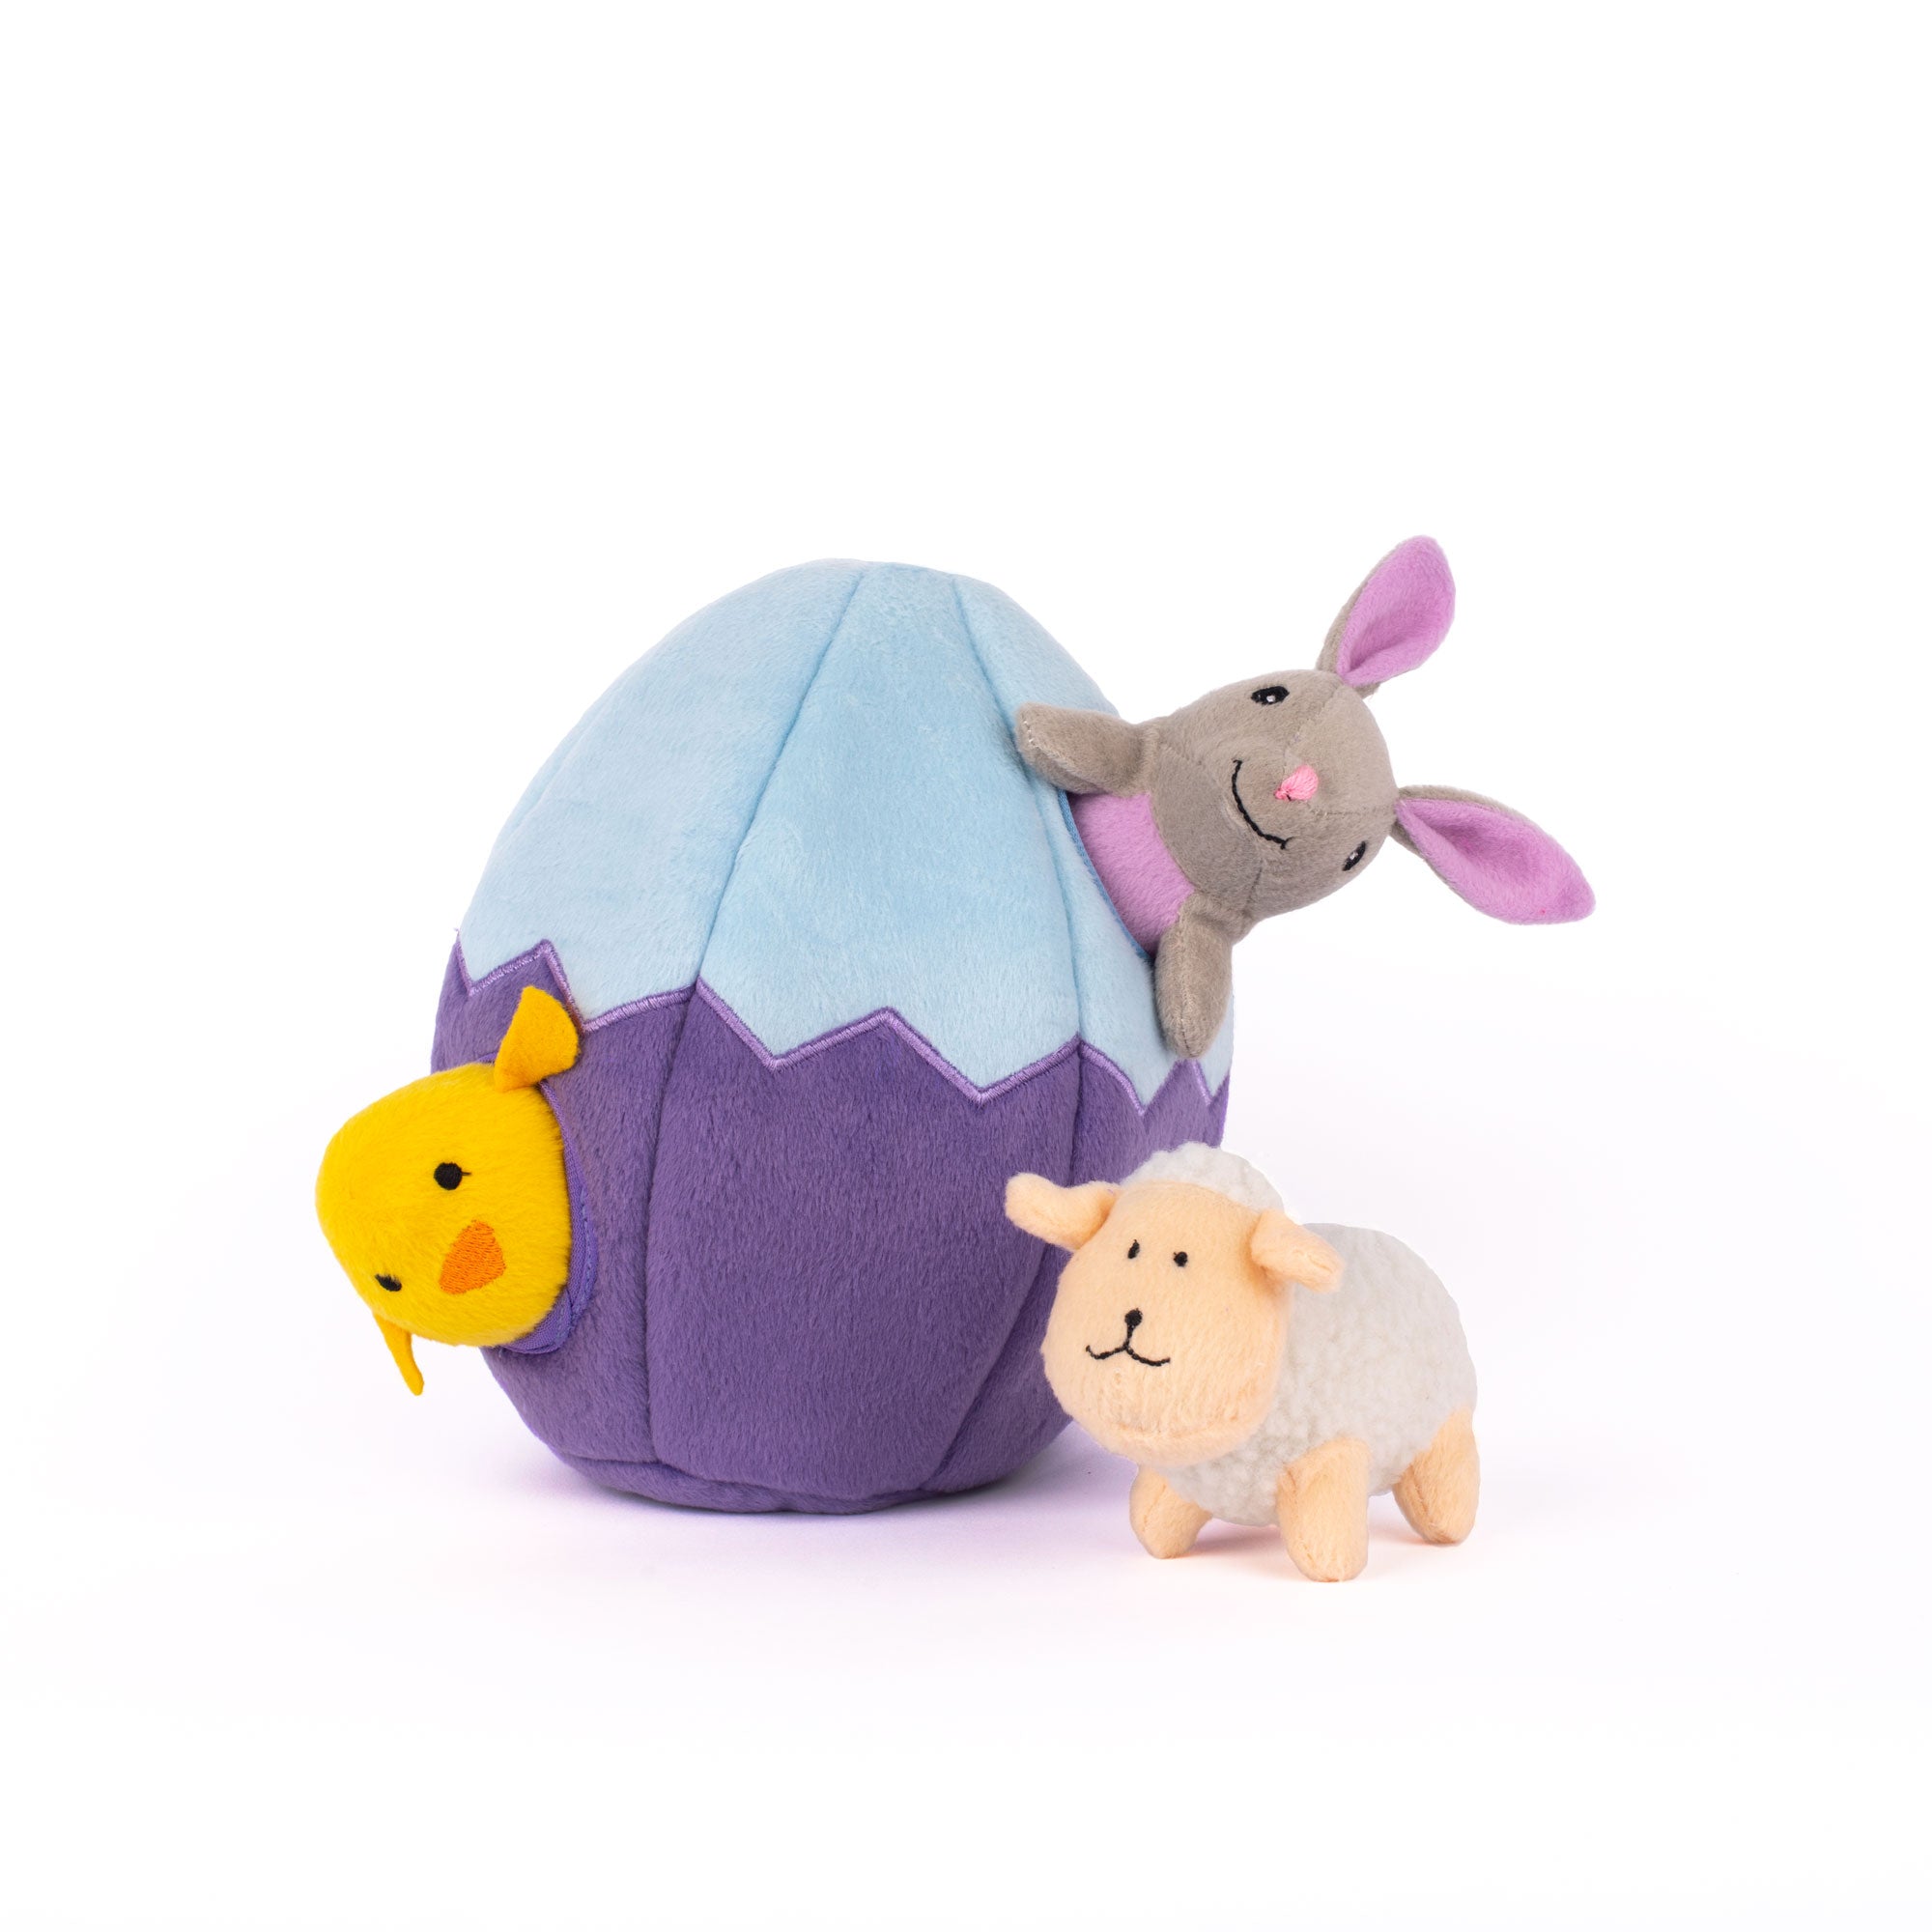 Huevito de Pascua y Compañía - Zippy Burrow Easter Egg and Friends